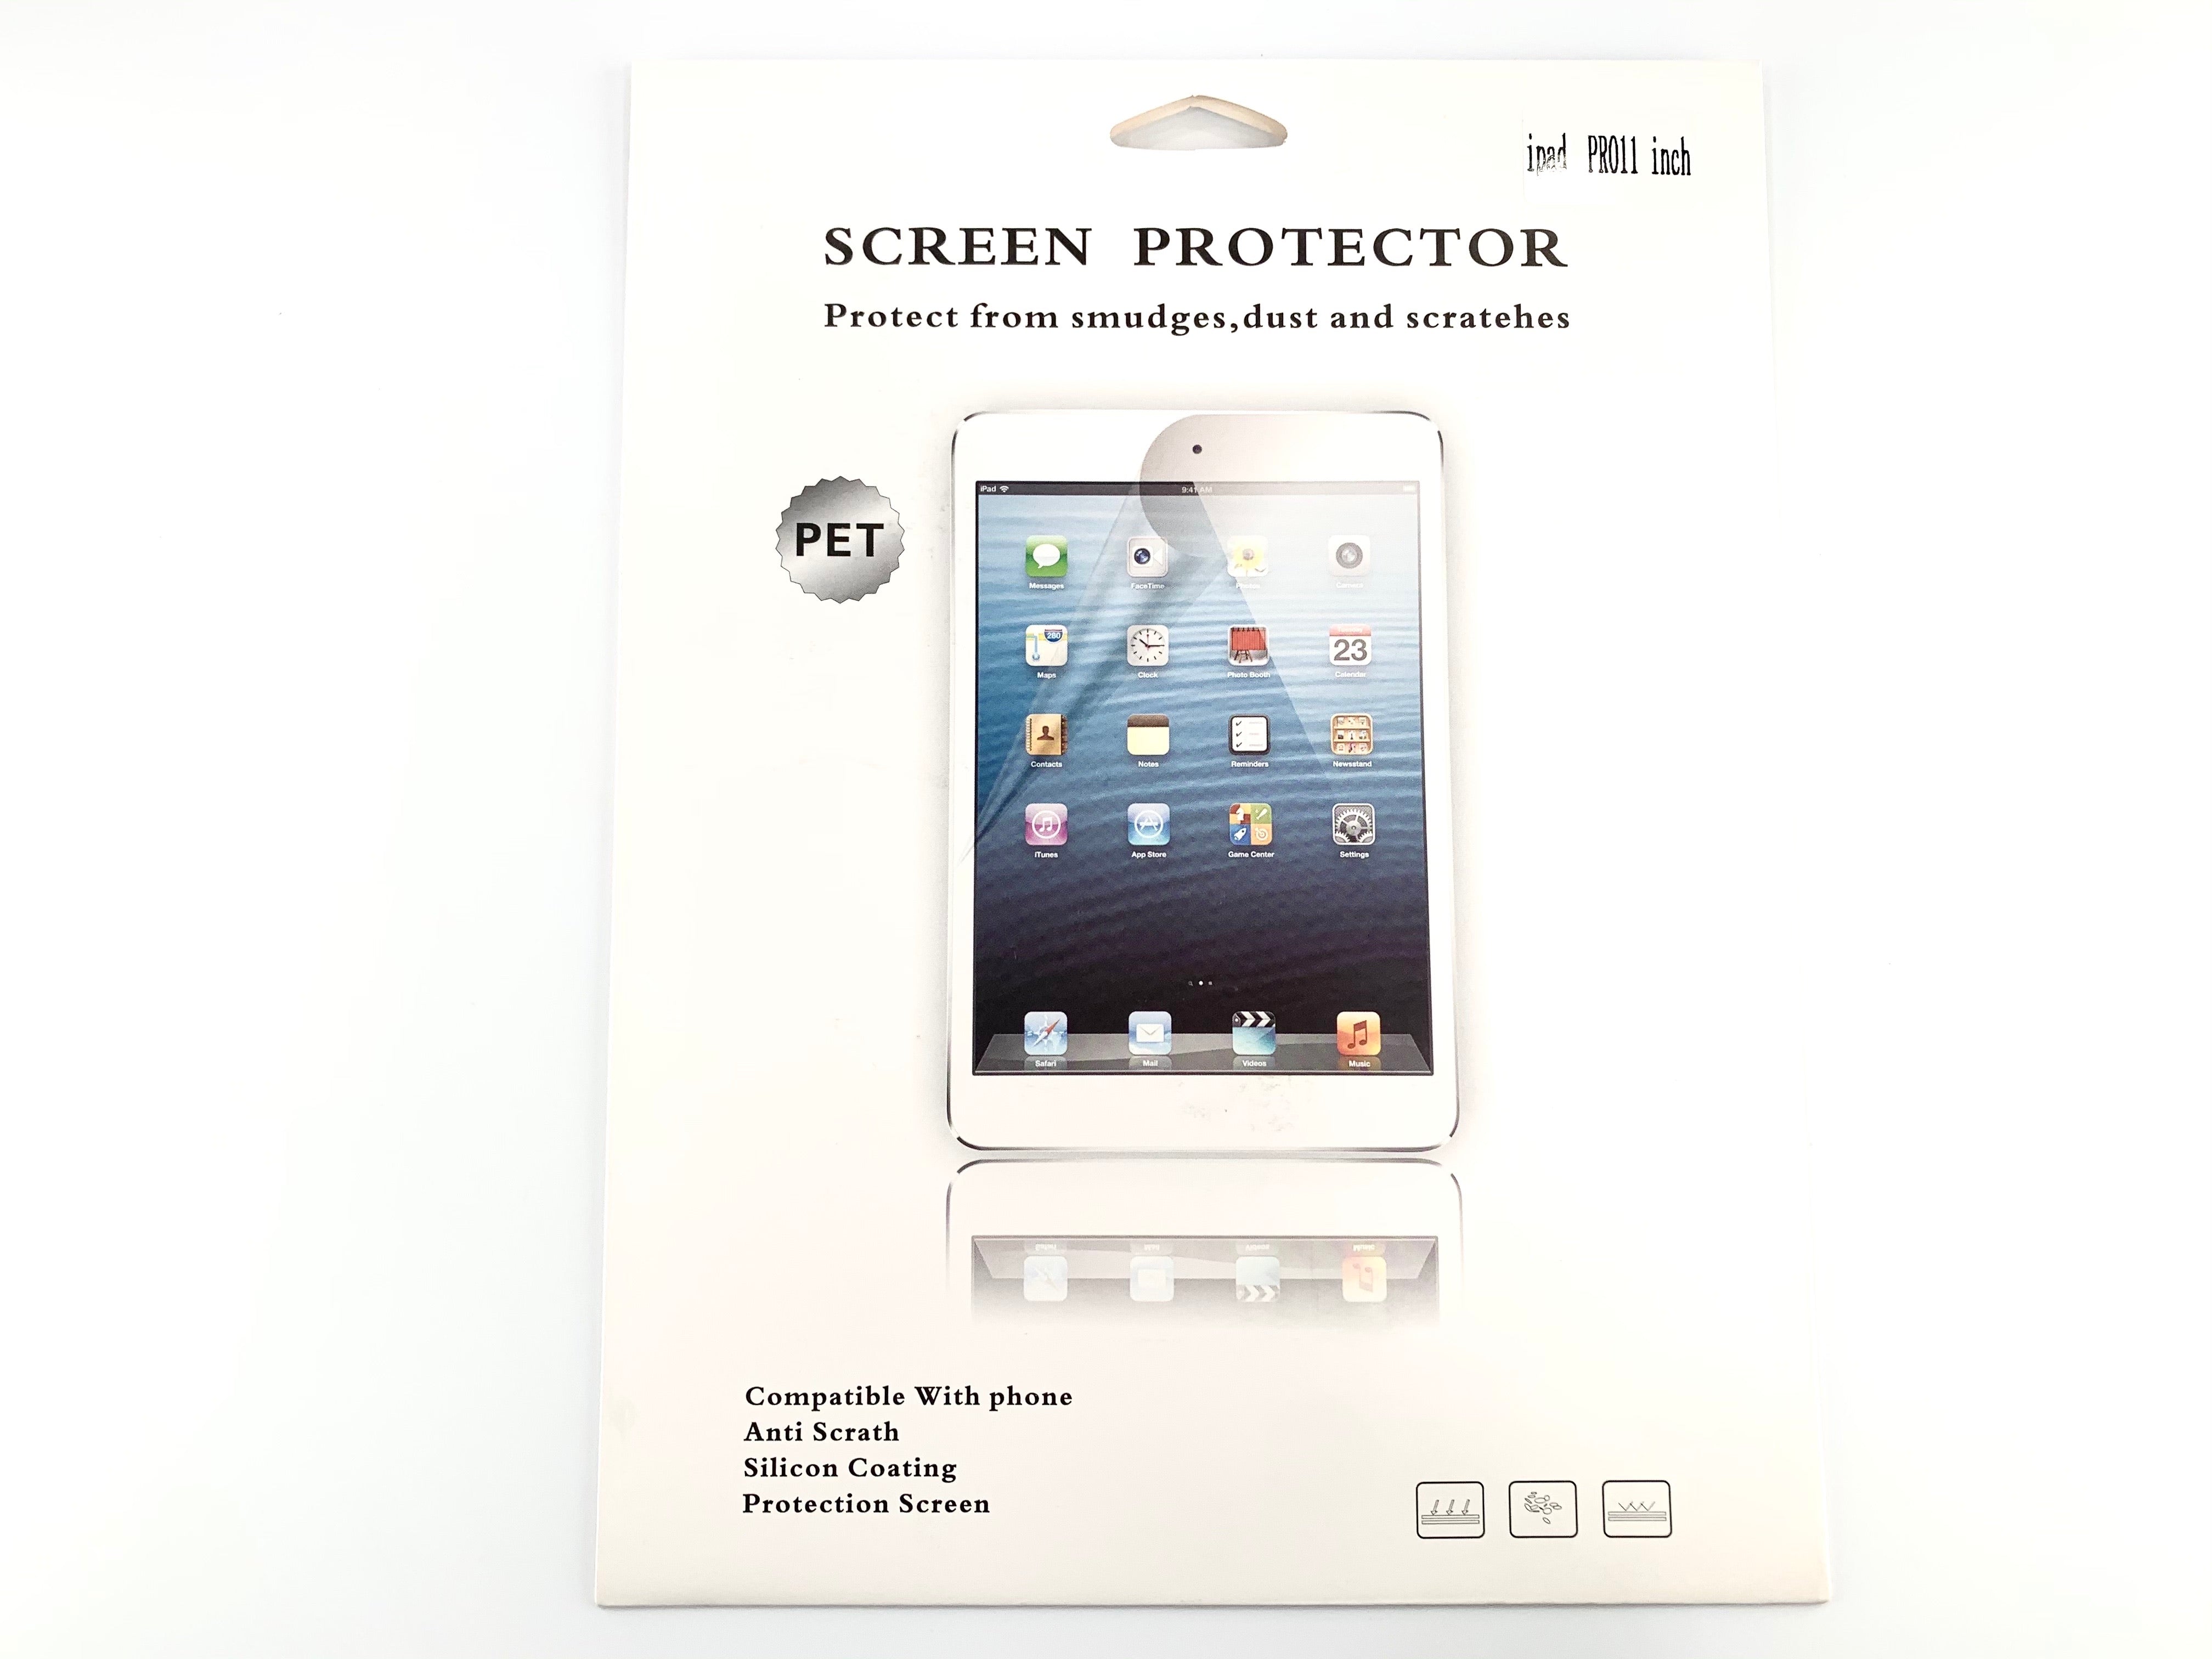 Protecteur d'écran anti-lumière bleue pour iPad en 5 tailles différentes